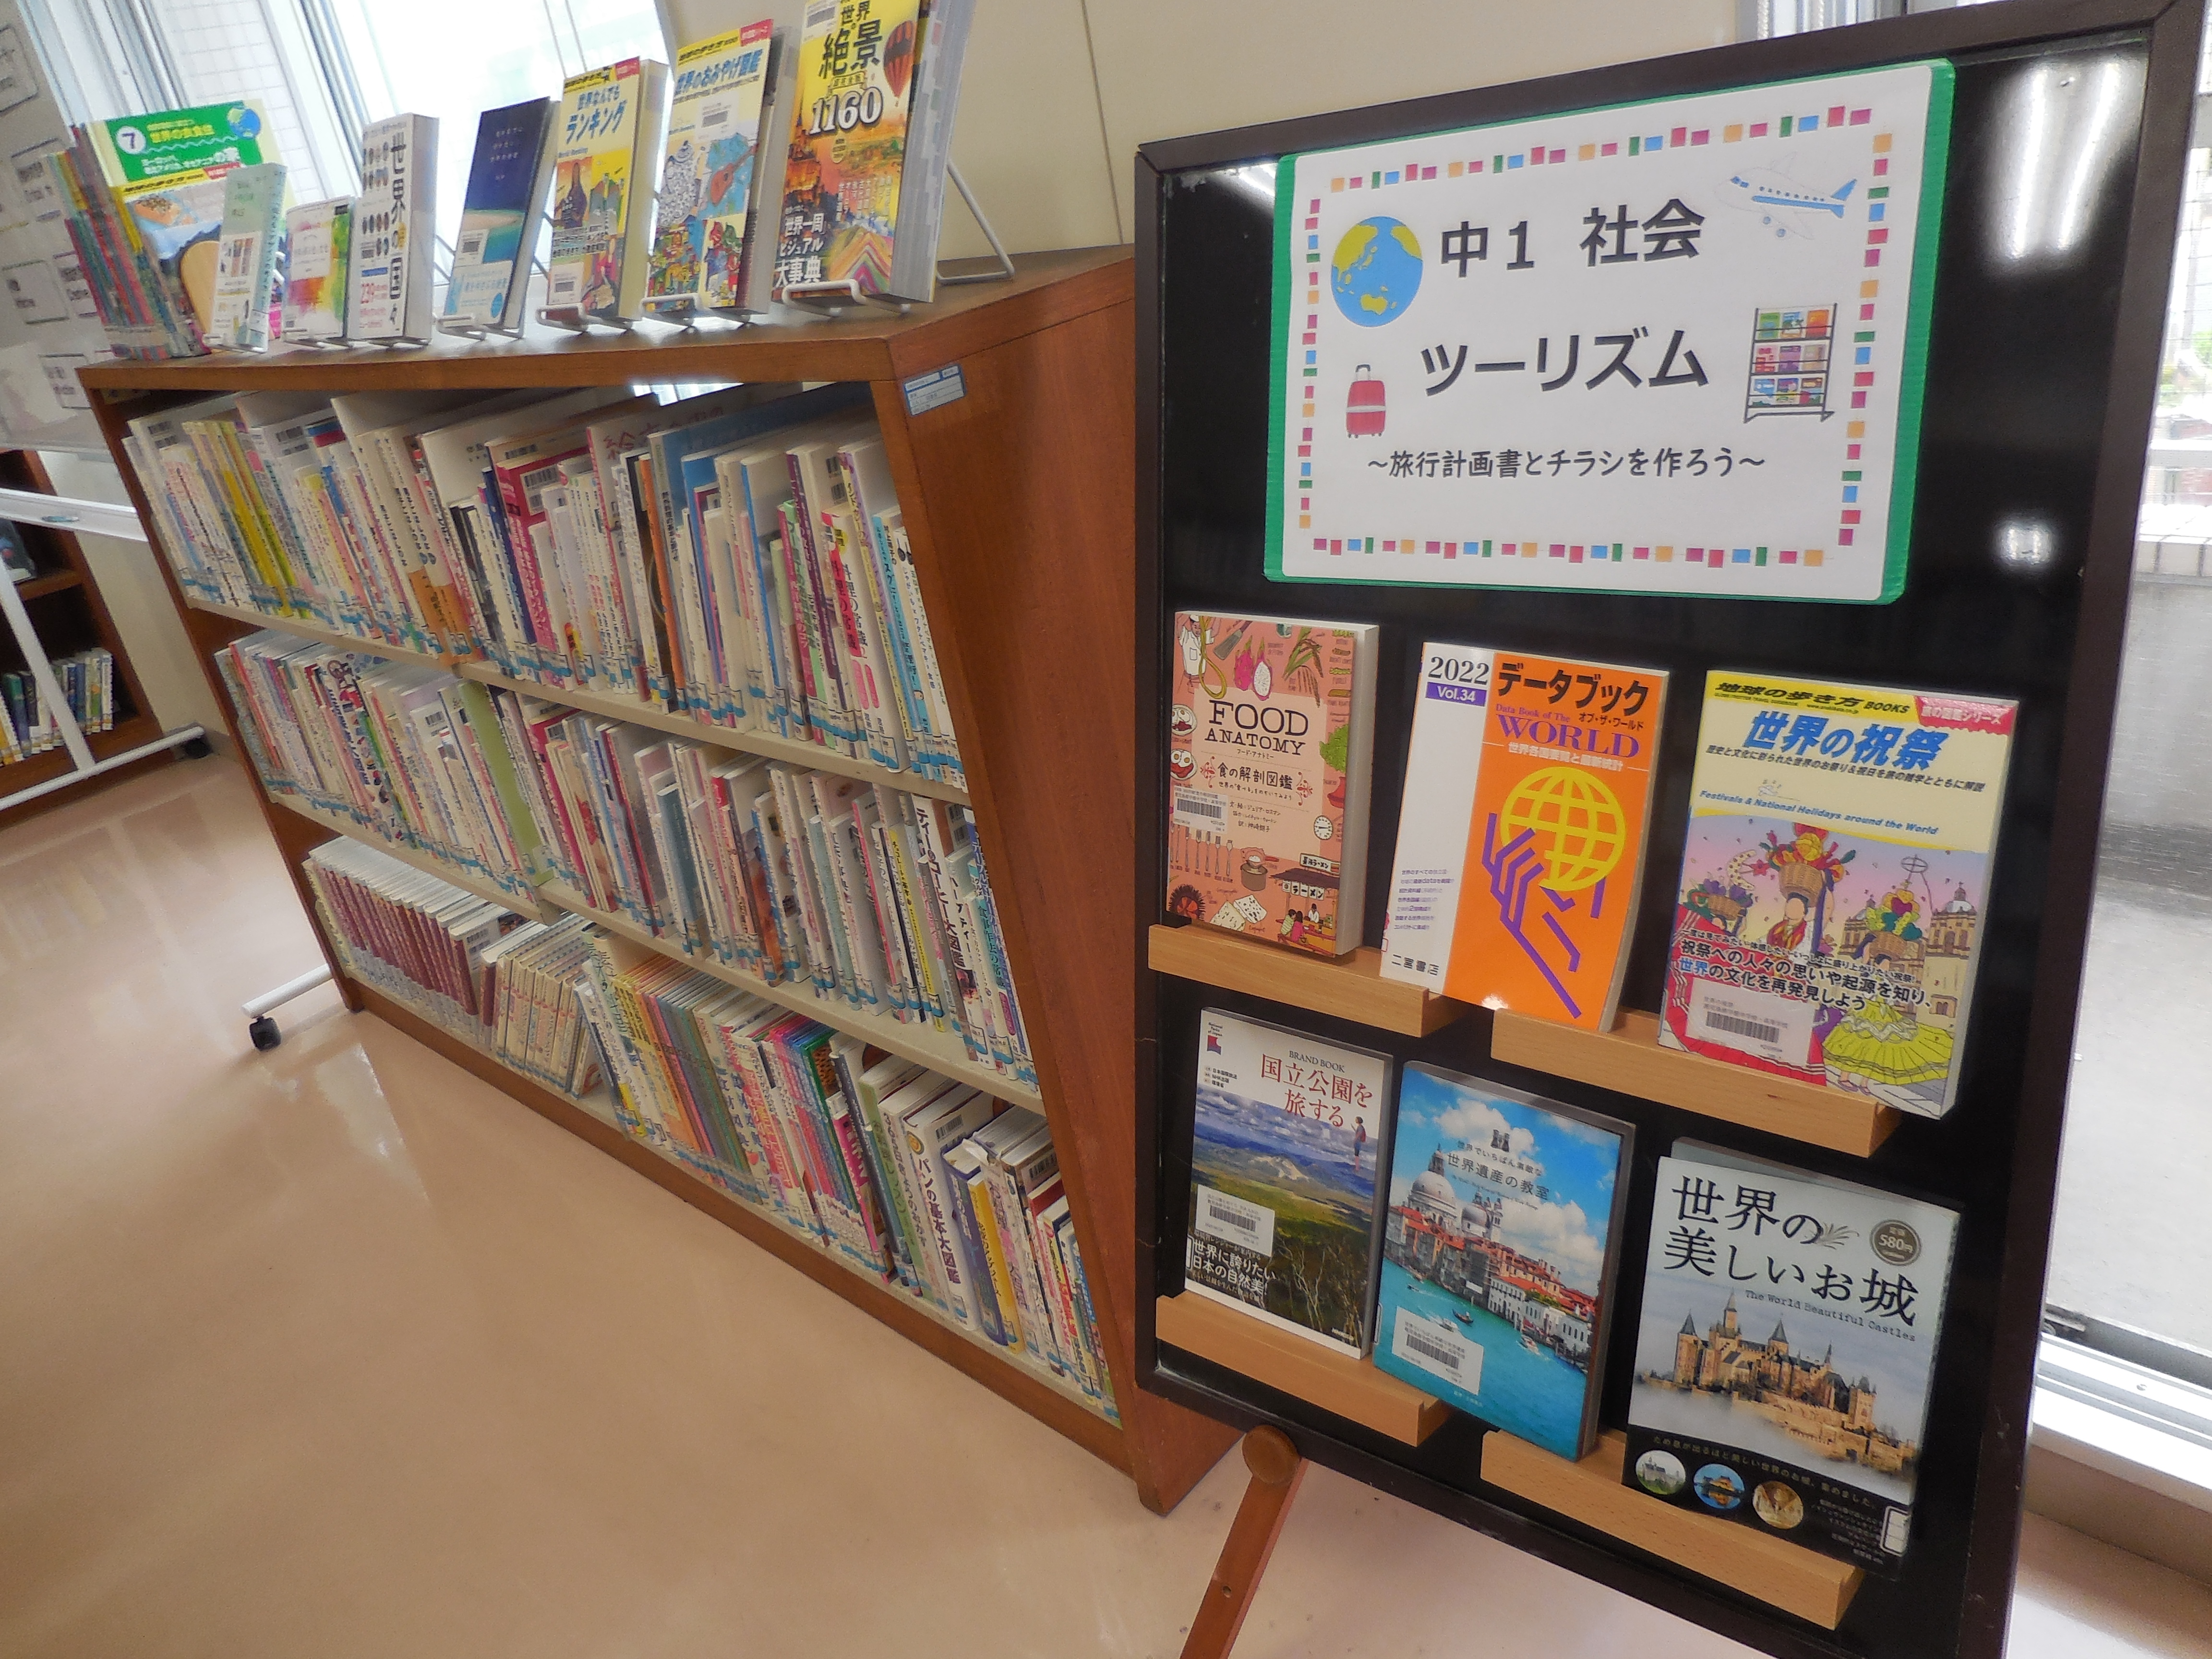 各教科の授業内容に関連した学校図書館でのコラボ展示